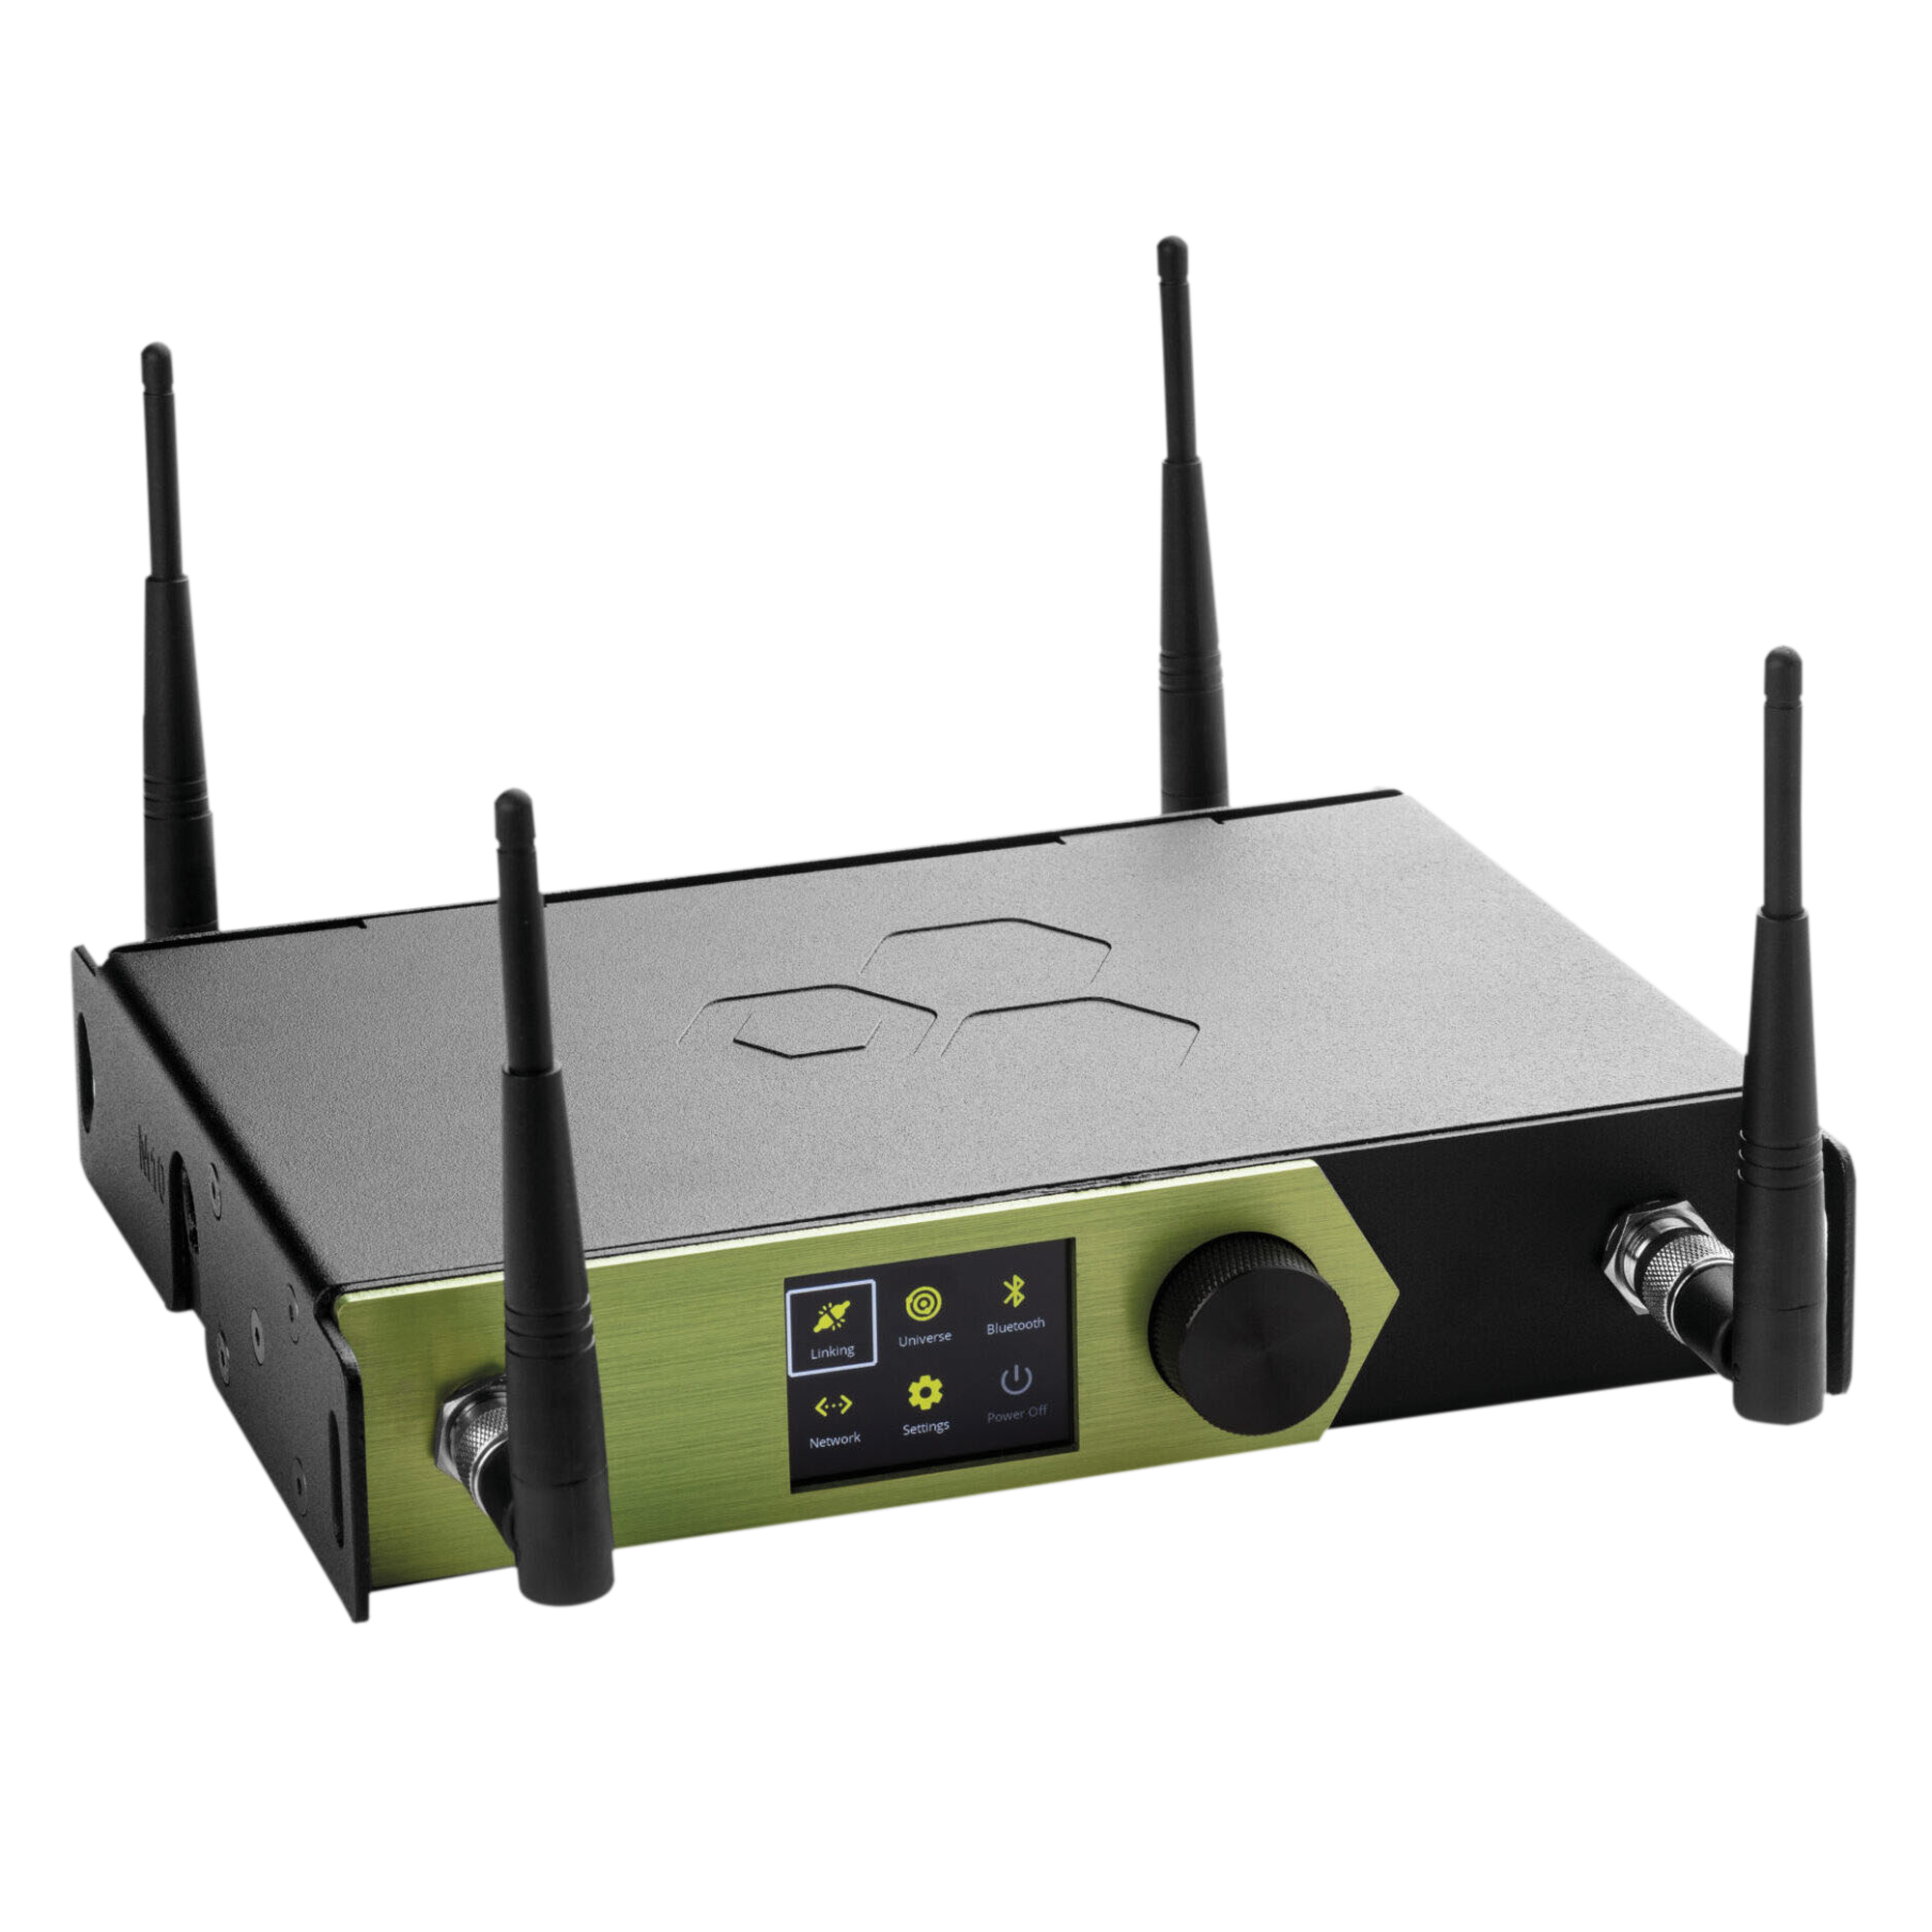 Lumenradio Stardust Acht Universe DMX/RDM-Sender mit Ethernet und Wi-Fi